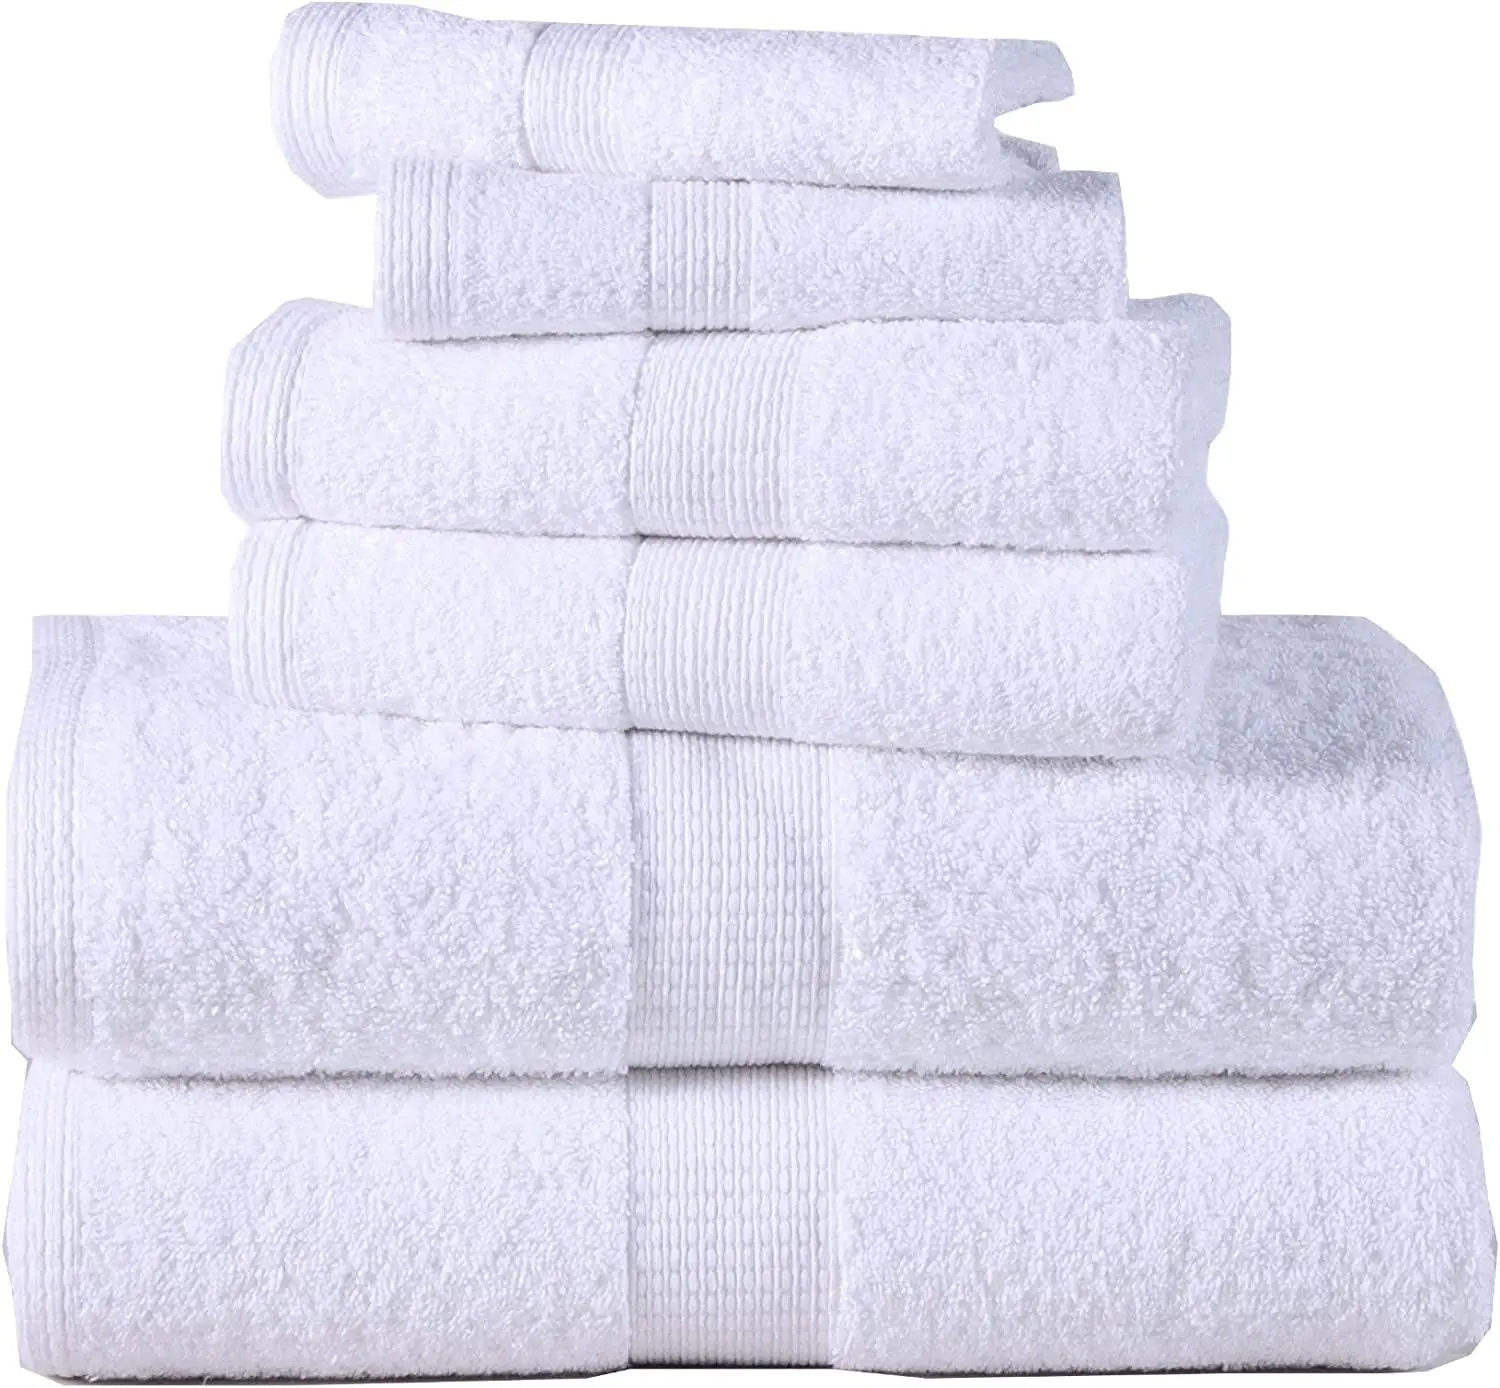 Luxo grosso melhor macio orgânico 100% algodão conjunto toalha de banho logotipo personalizado terry mão toalha toalhas de banho